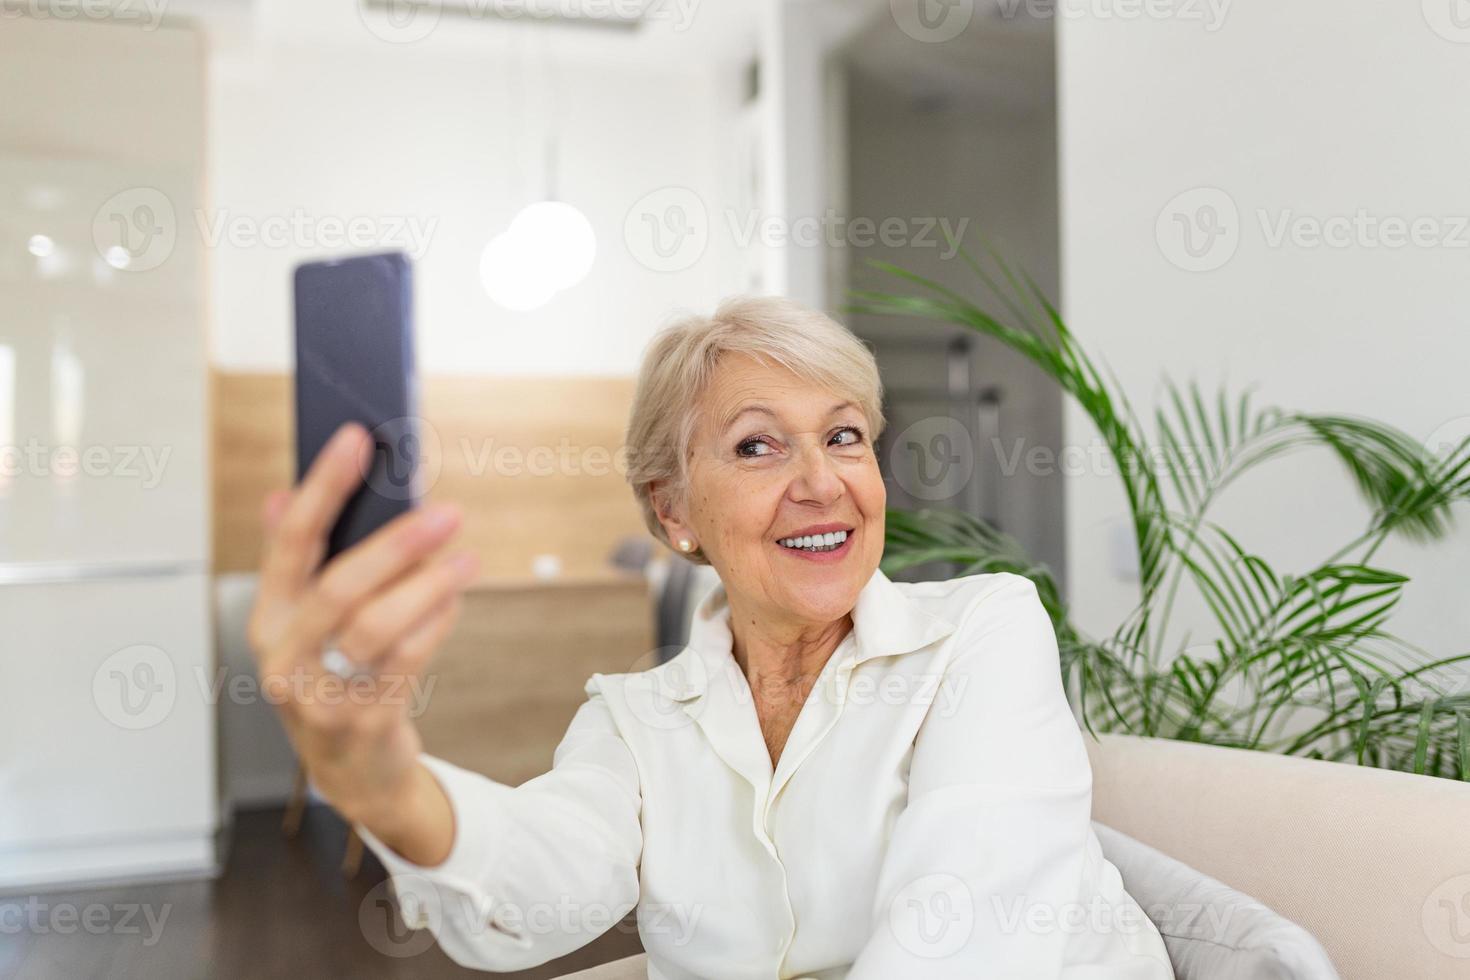 nonna assunzione selfie a casa nel il soggiorno. vicino su ritratto di contento allegro delizioso affascinante bellissimo anziano signora nonna nonna assunzione un' autoscatto. vecchiaia, la pensione e persone concetto foto